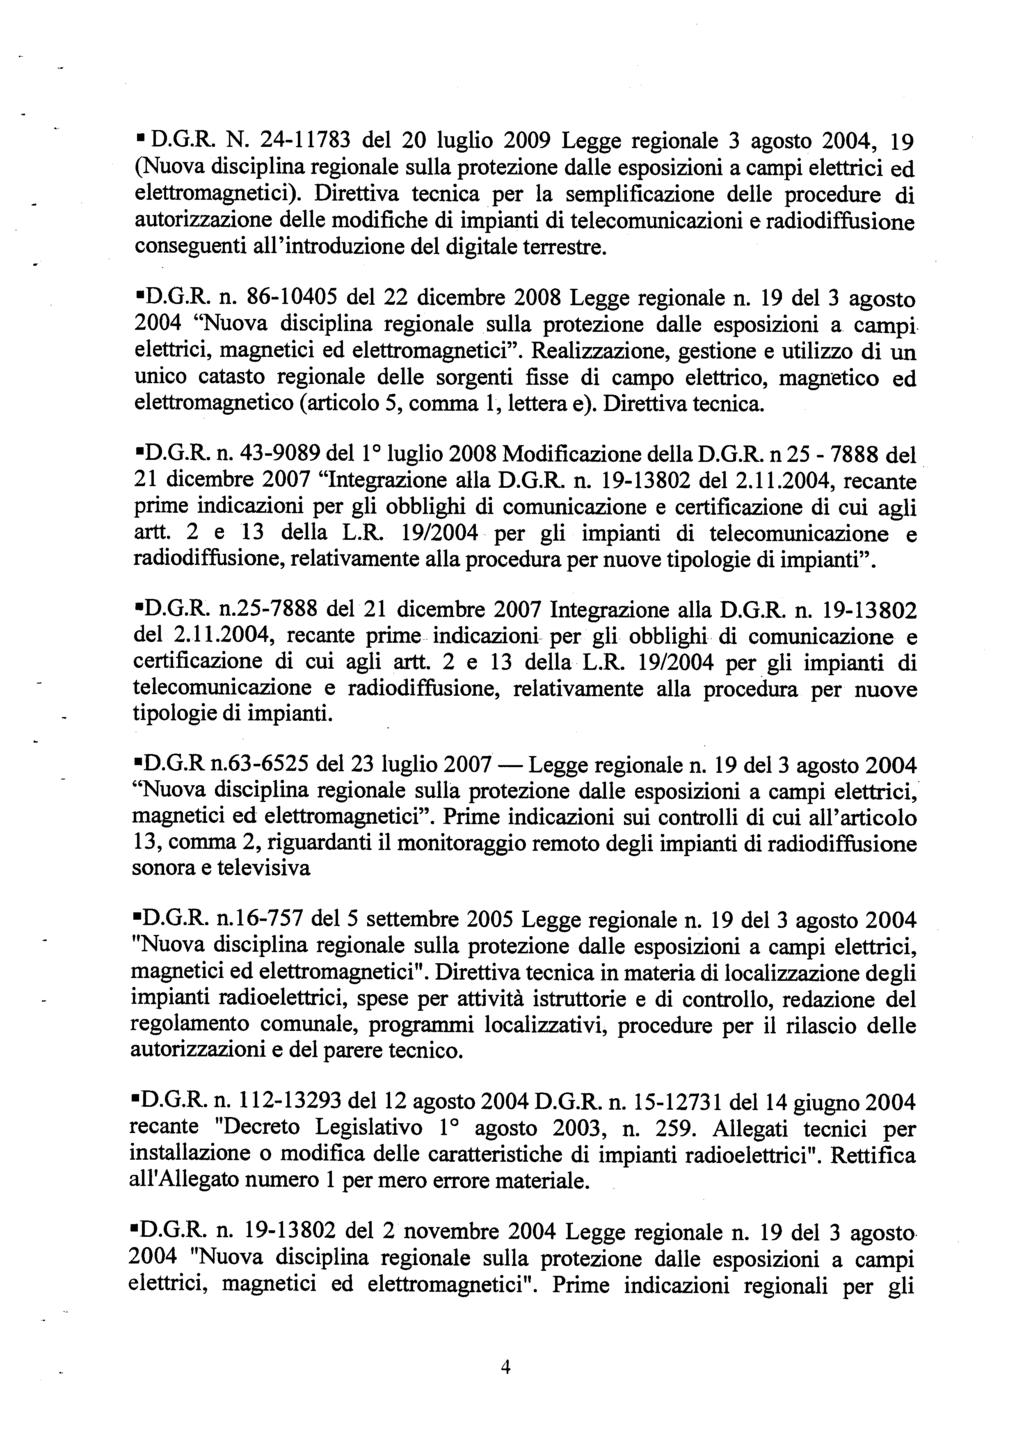 D.G.R. N. 24-11783 del 20 luglio 2009 Legge regionale (Nuova disciplina regionale sulla protezione dalle esposizioni elettromagnetici).